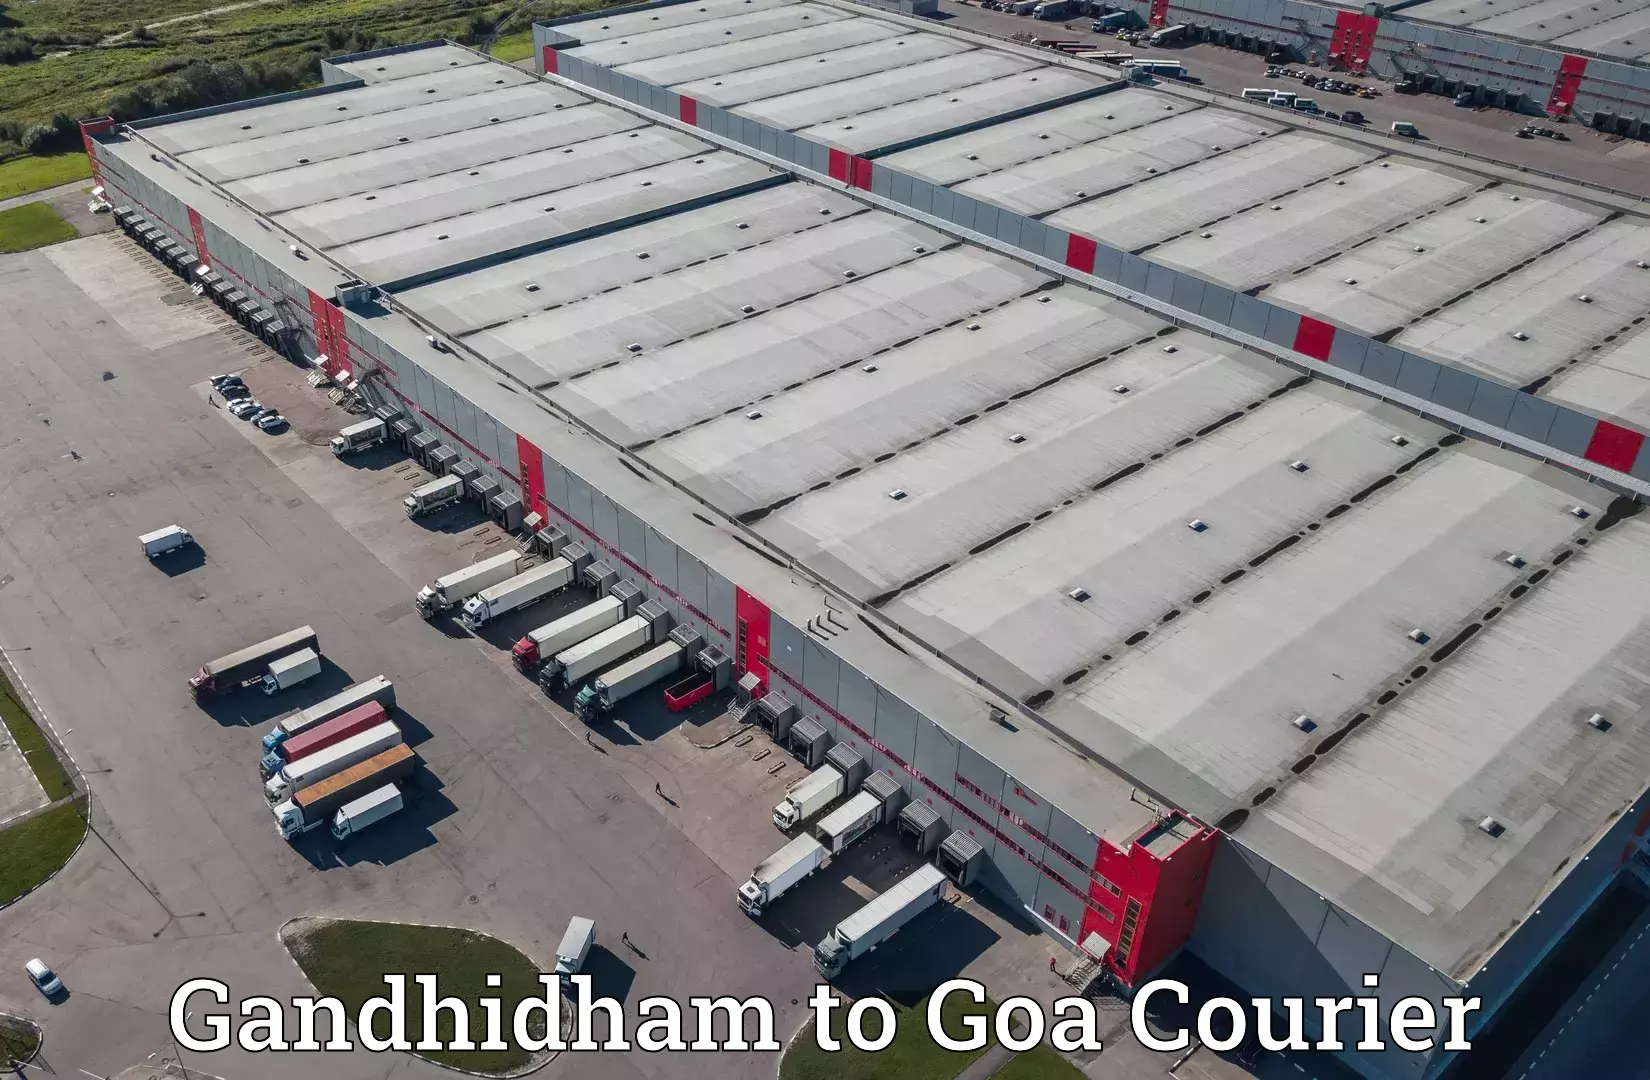 International parcel service Gandhidham to Goa